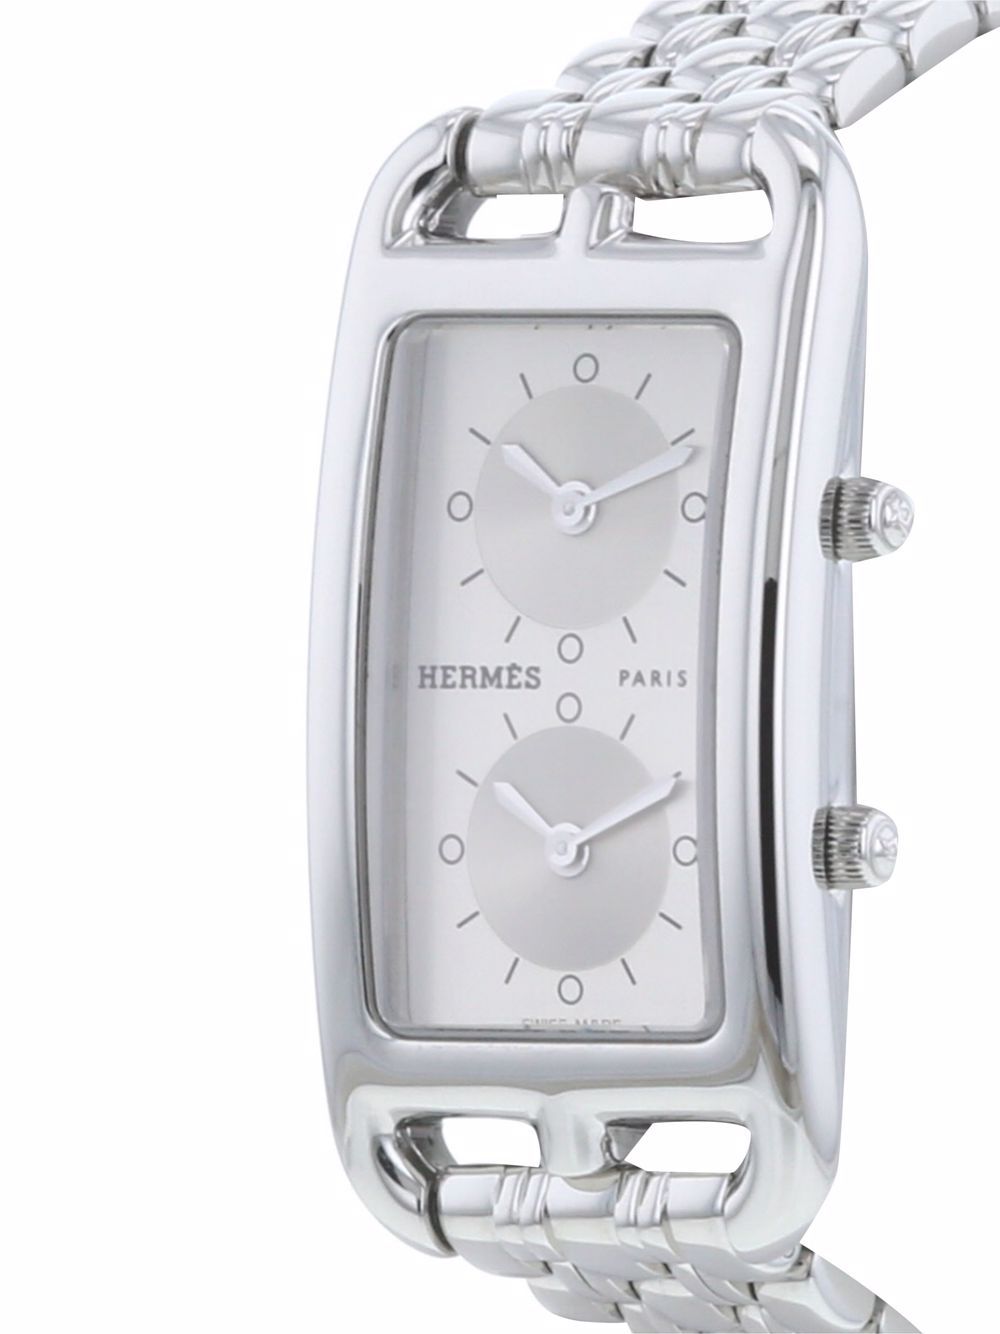 фото Hermès наручные часы cape cod nantucket pre-owned 20 мм 2000-го года